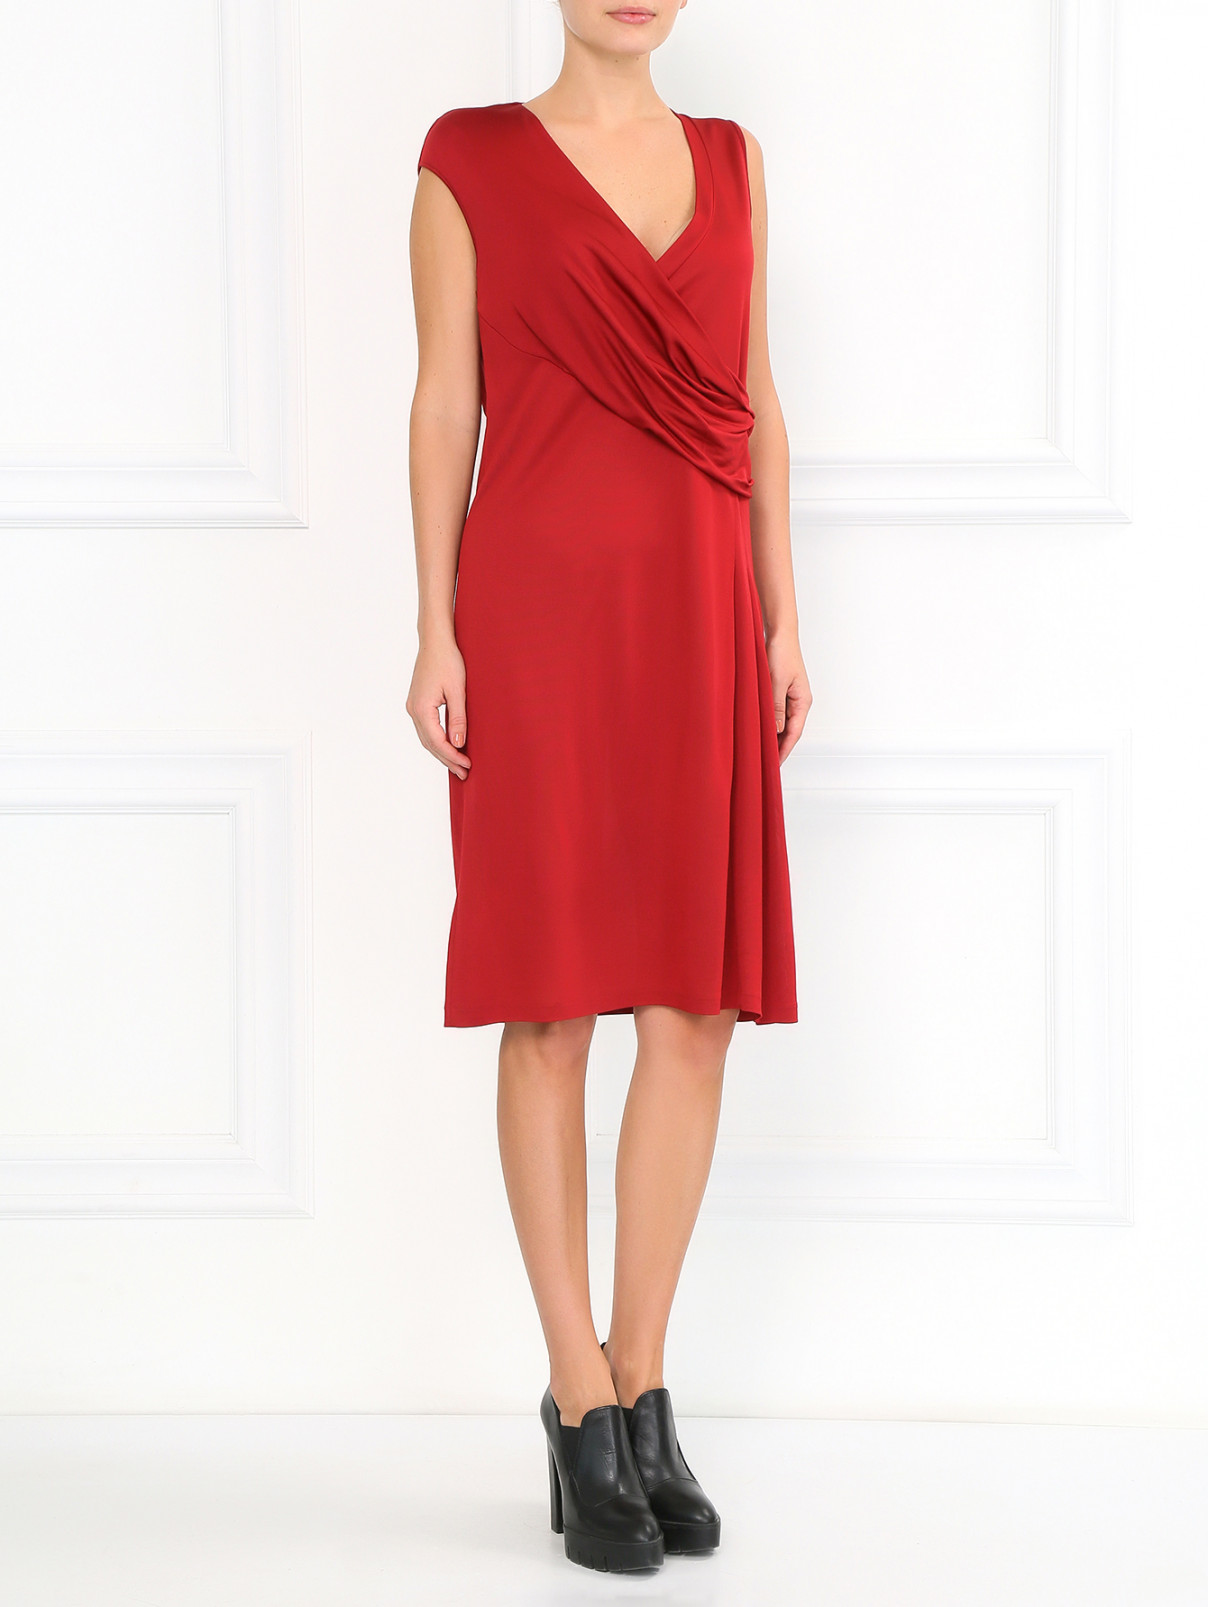 Платье с запахом и драпировкой Antonio Marras  –  Модель Общий вид  – Цвет:  Красный